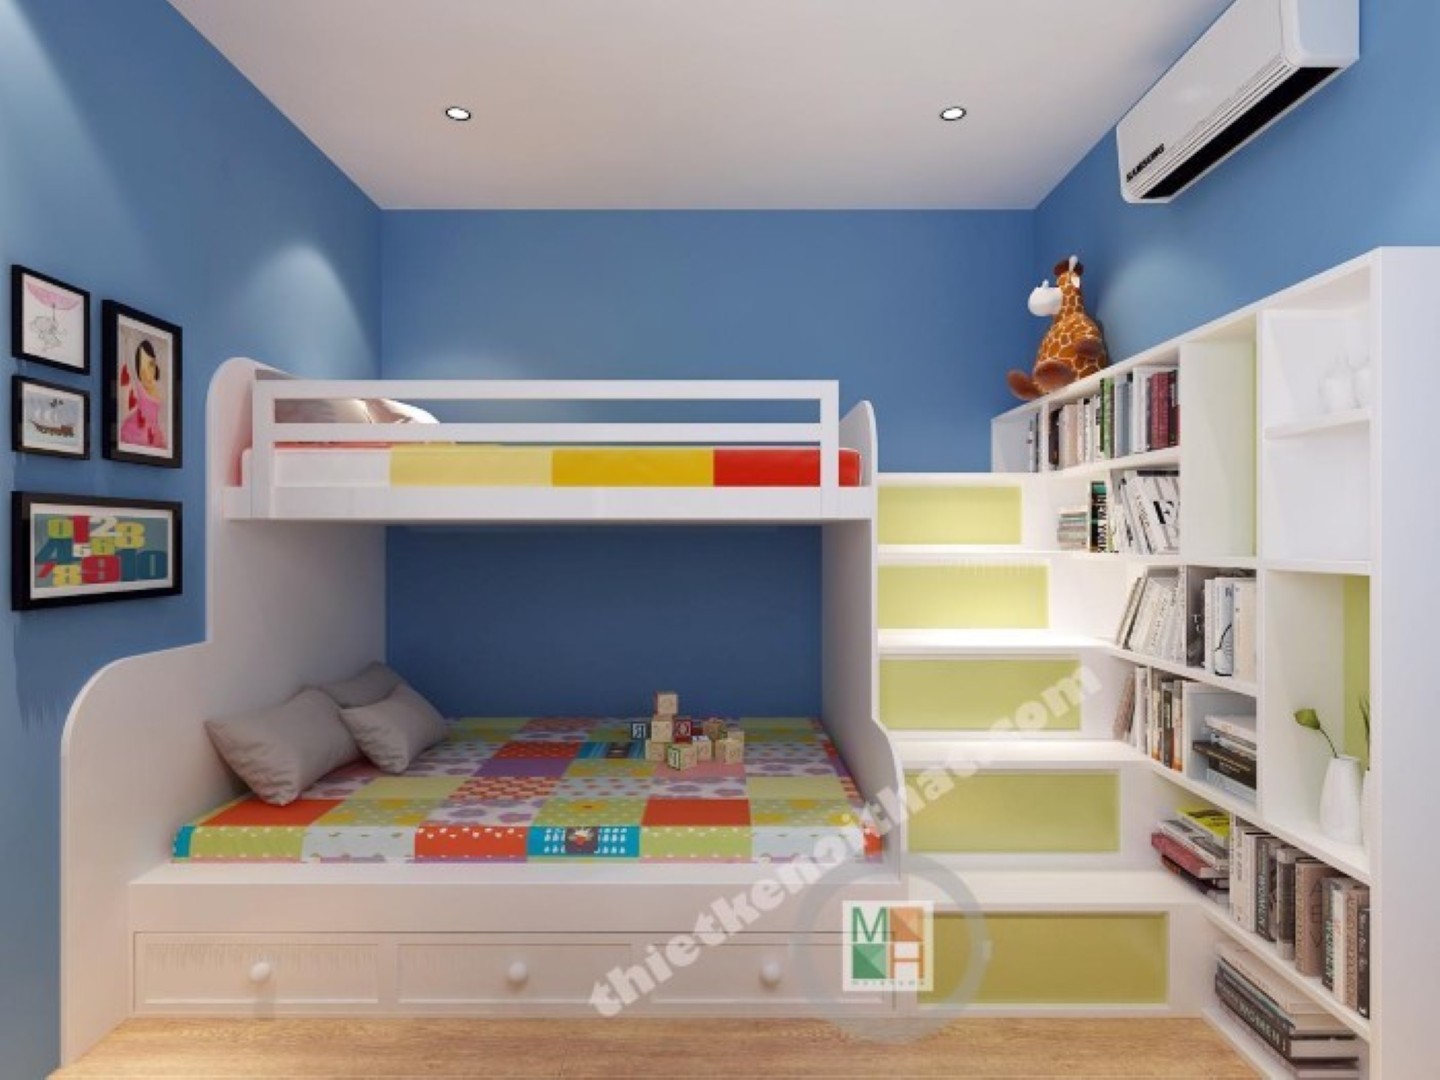 Trang trí phòng ngủ nhỏ với mẫu giường thông minh